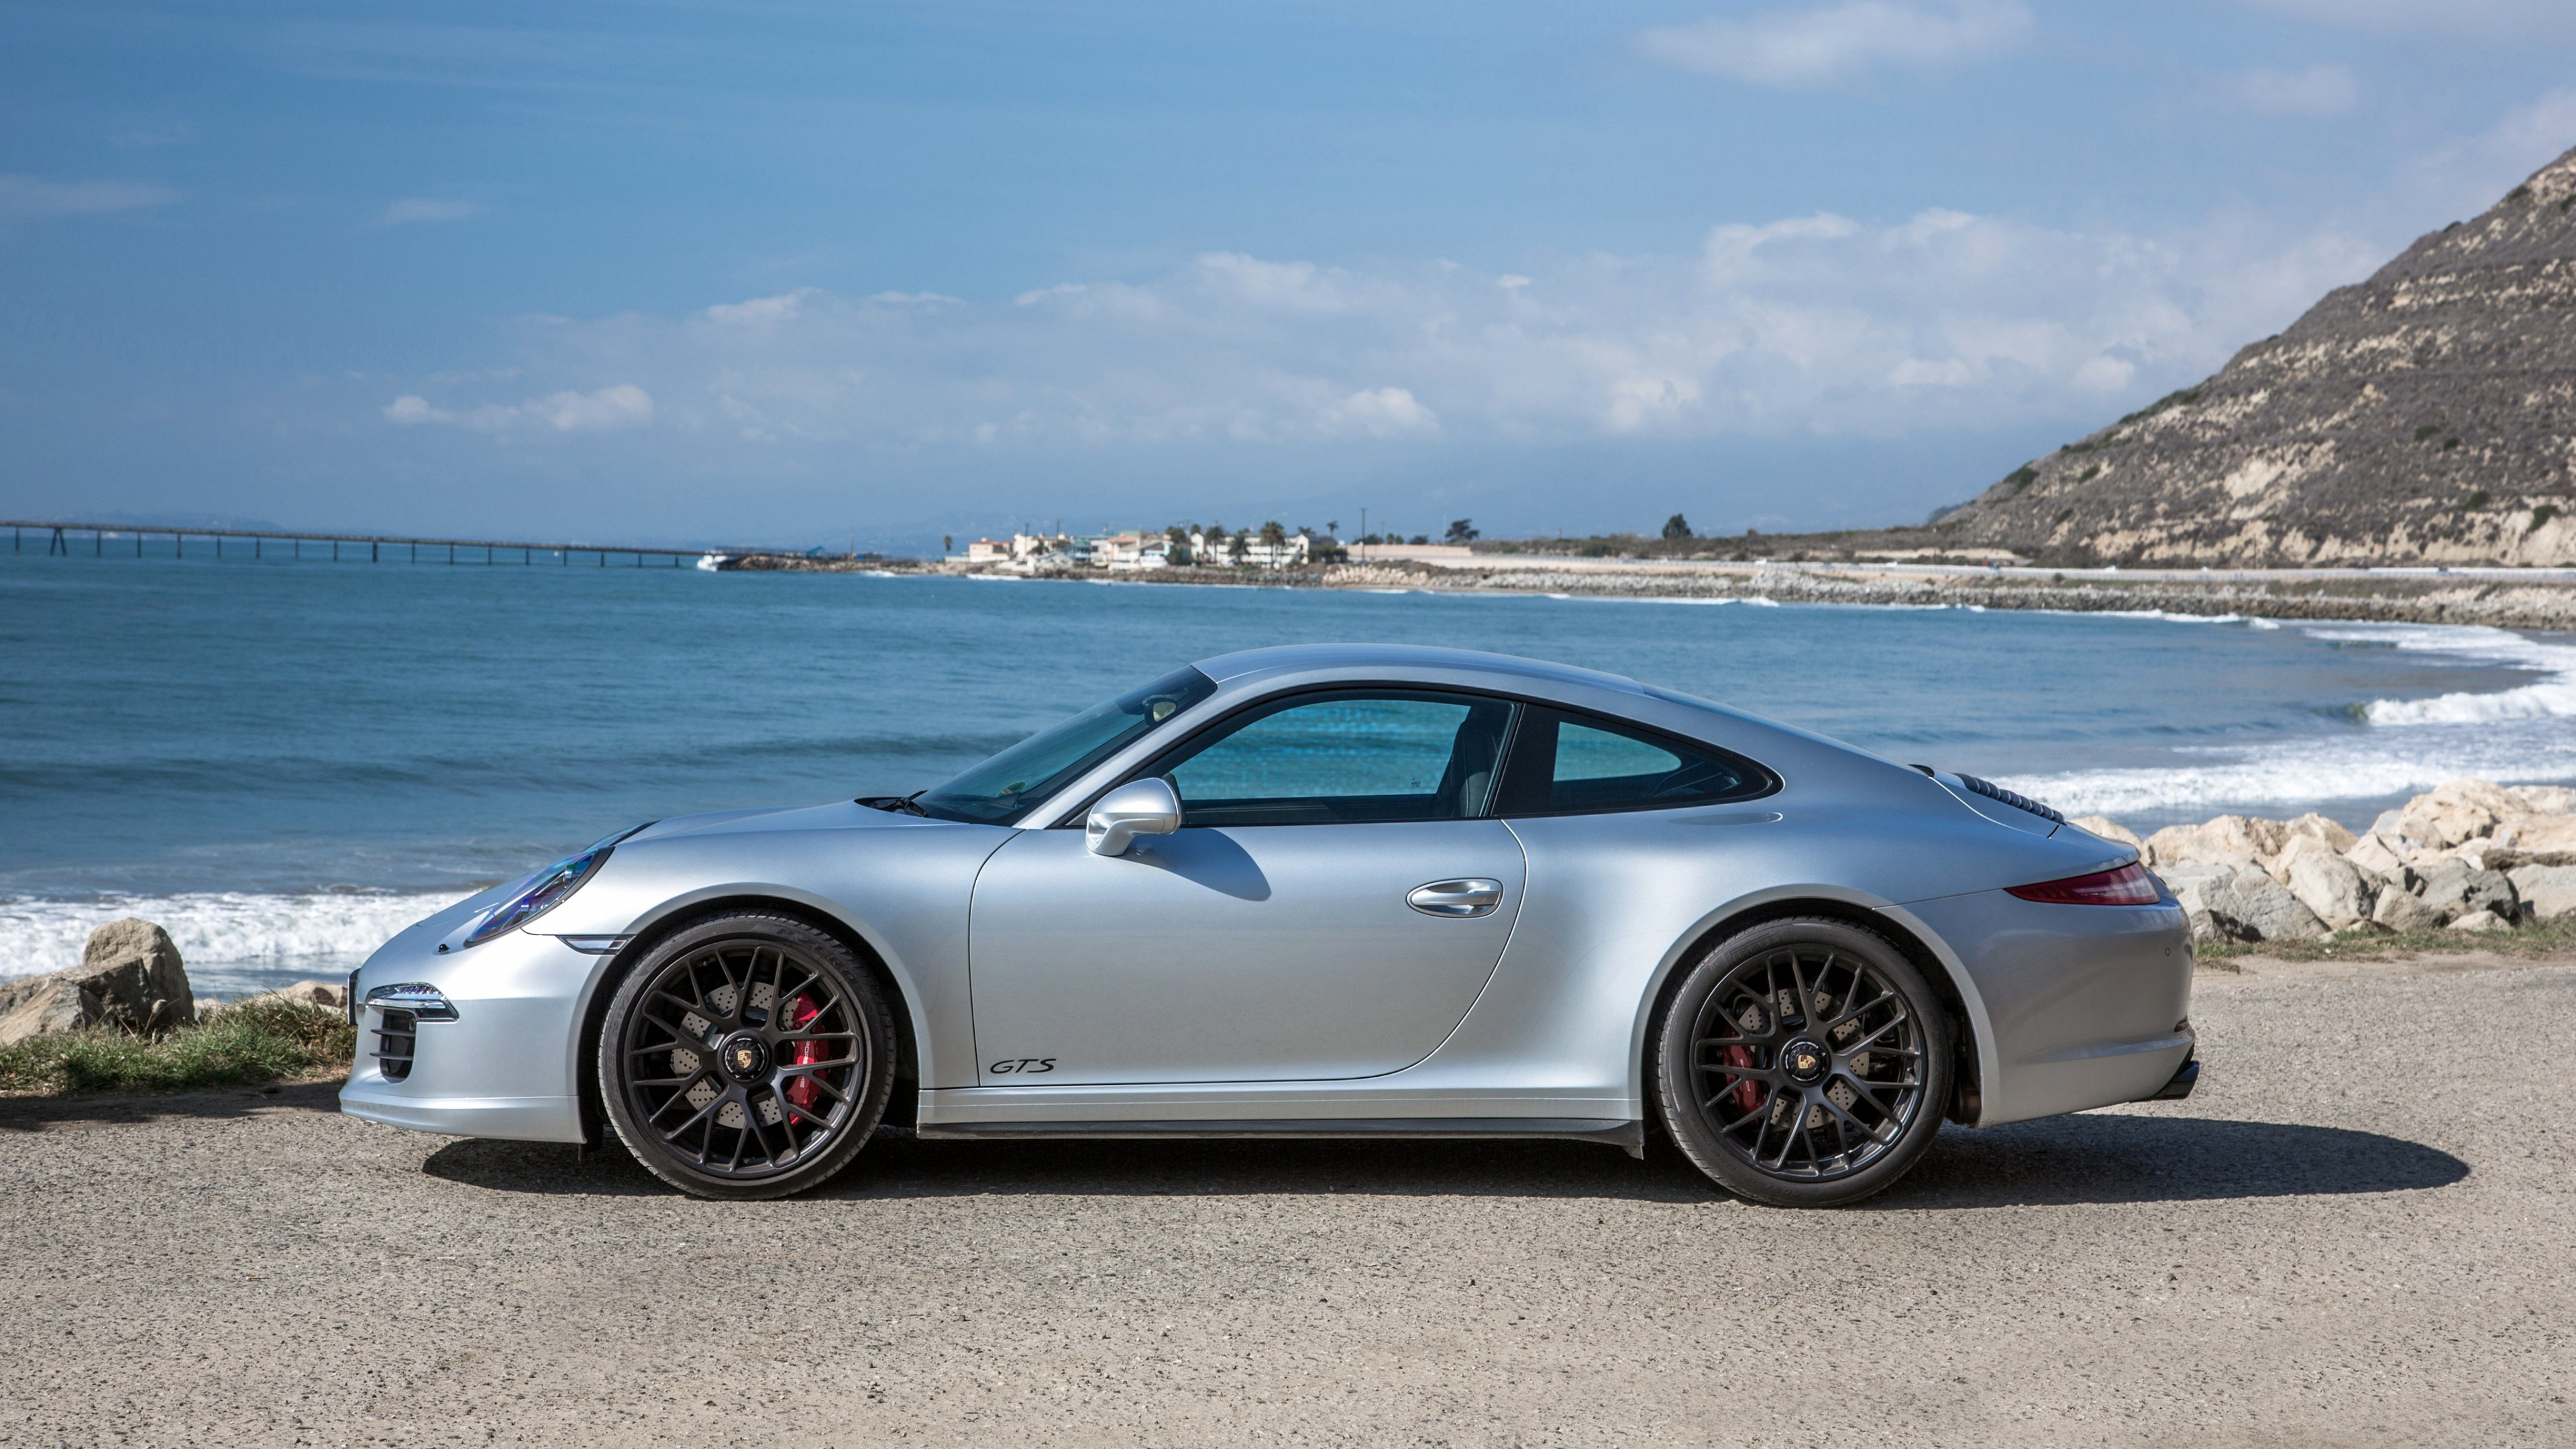 Silberner Porsche 911 Tagsüber am Meer Geparkt. Wallpaper in 3840x2160 Resolution